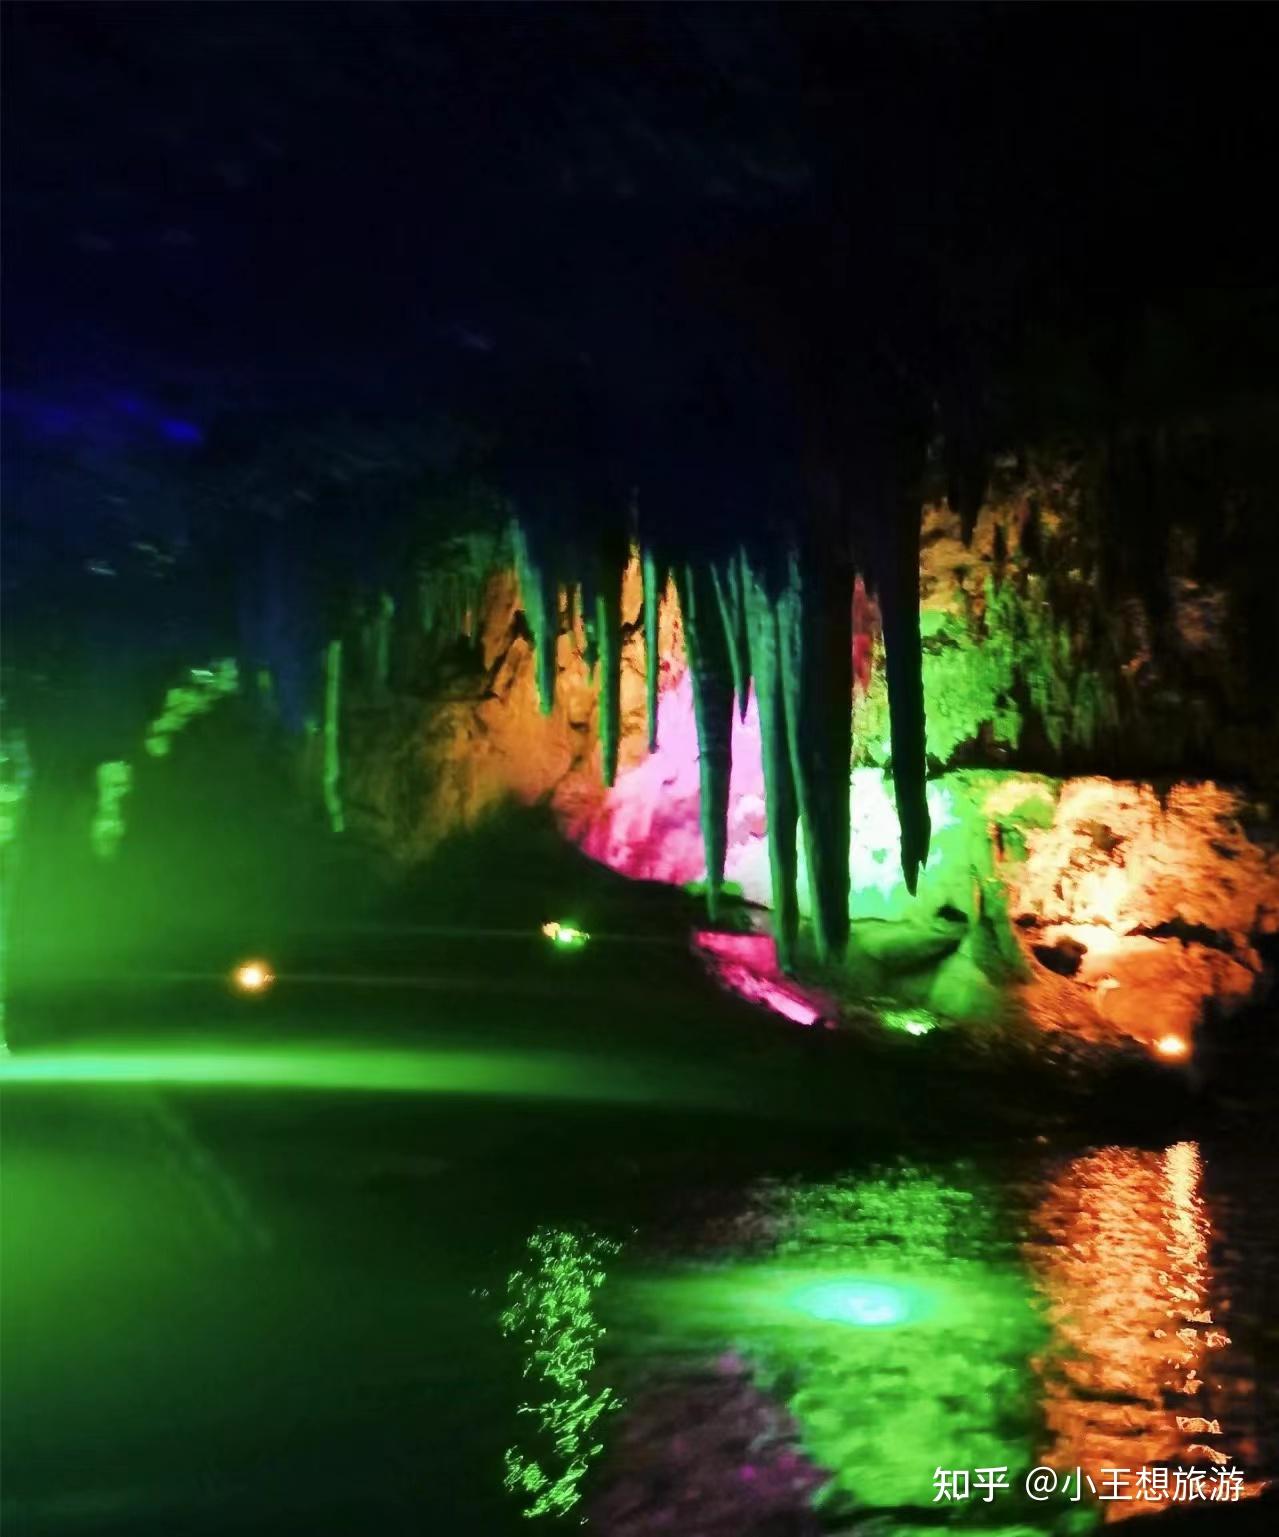 本溪水洞：世界上可乘船游览的最长溶洞